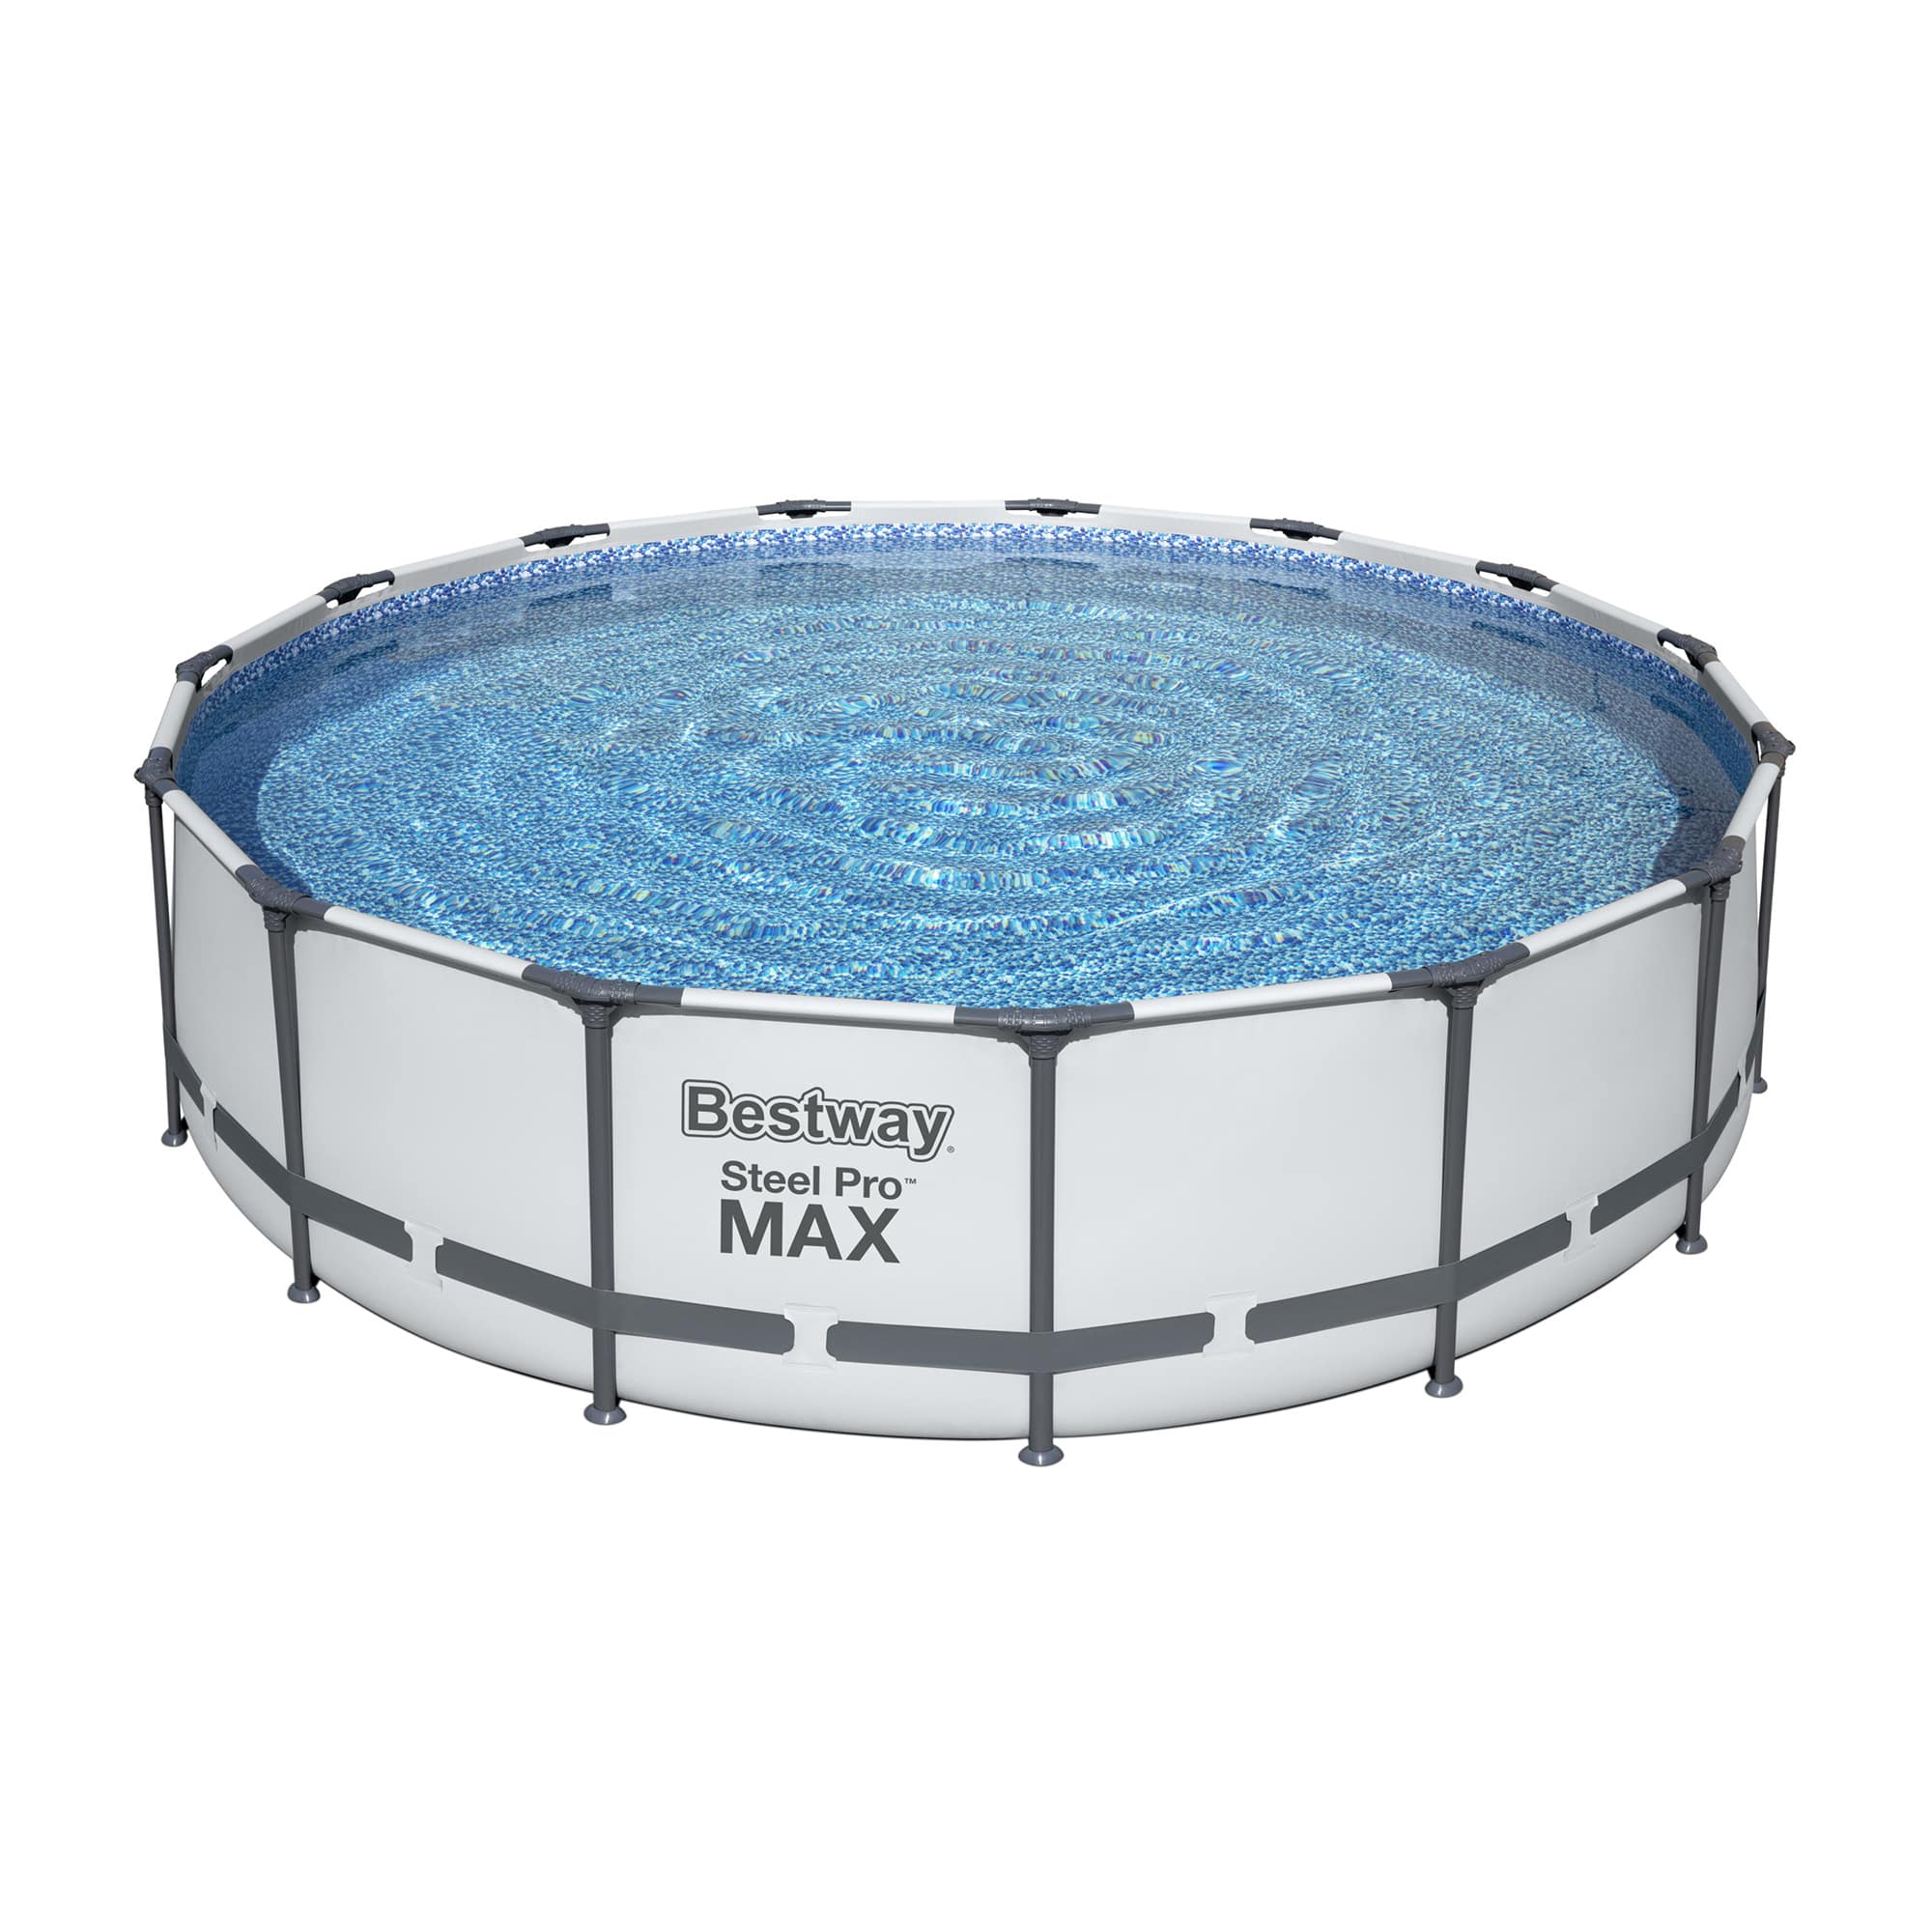 Set de piscina desmontable Steel Pro MAX de 4.57 m x 1.07 m de Bestway